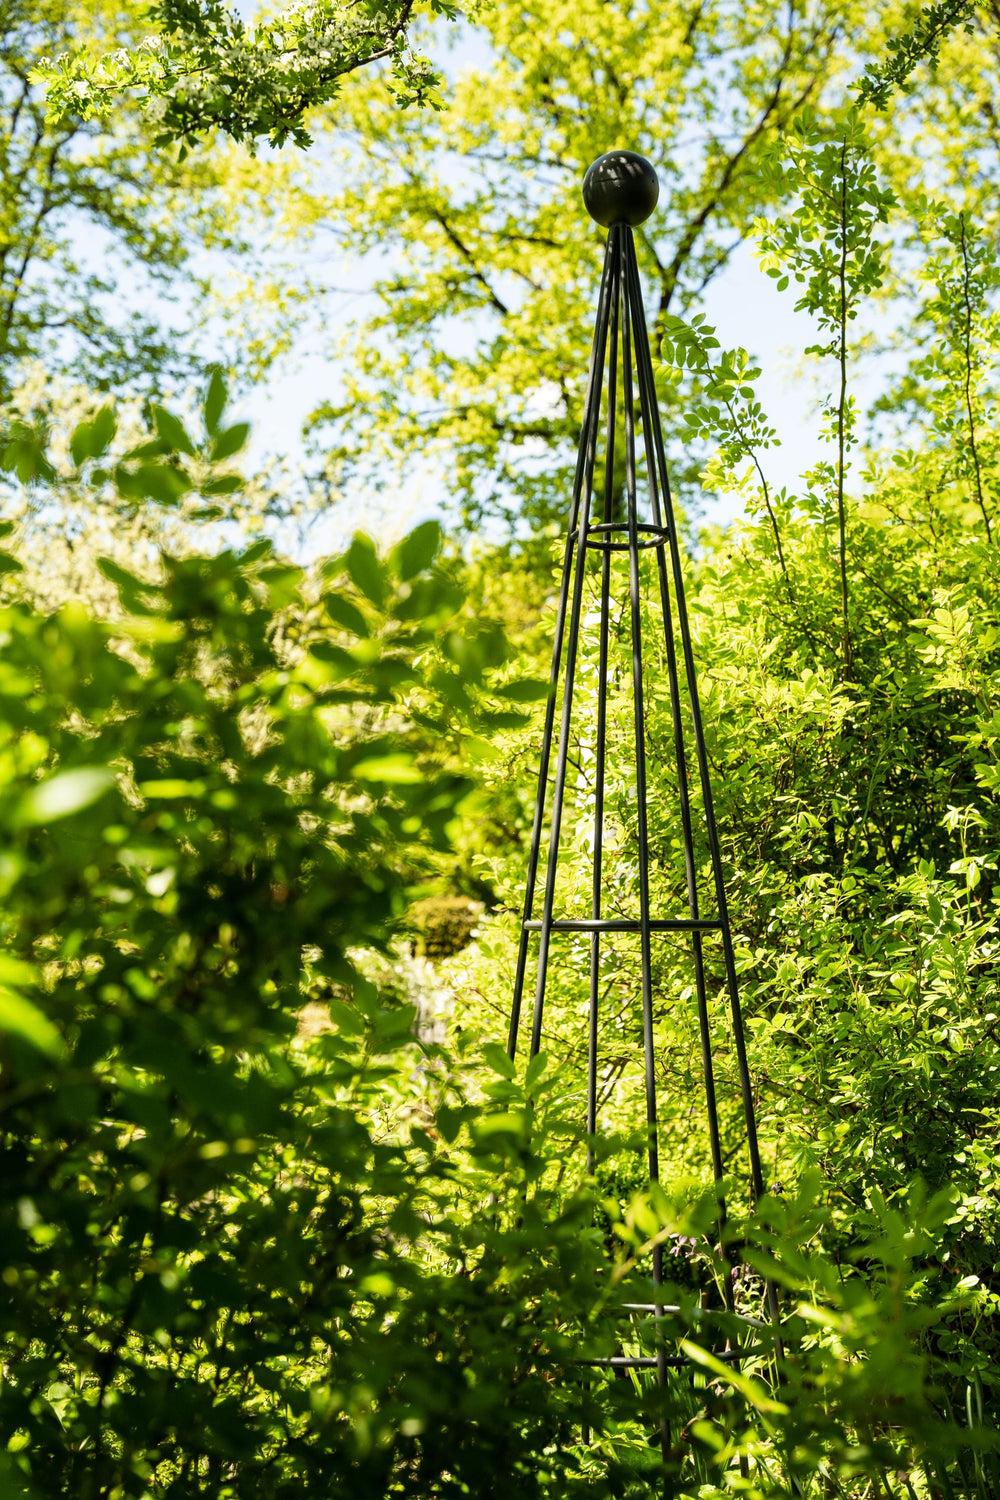 Obelisk Enna im Garten vor grünen Pflanzen, pulverbeschichtet athrazit